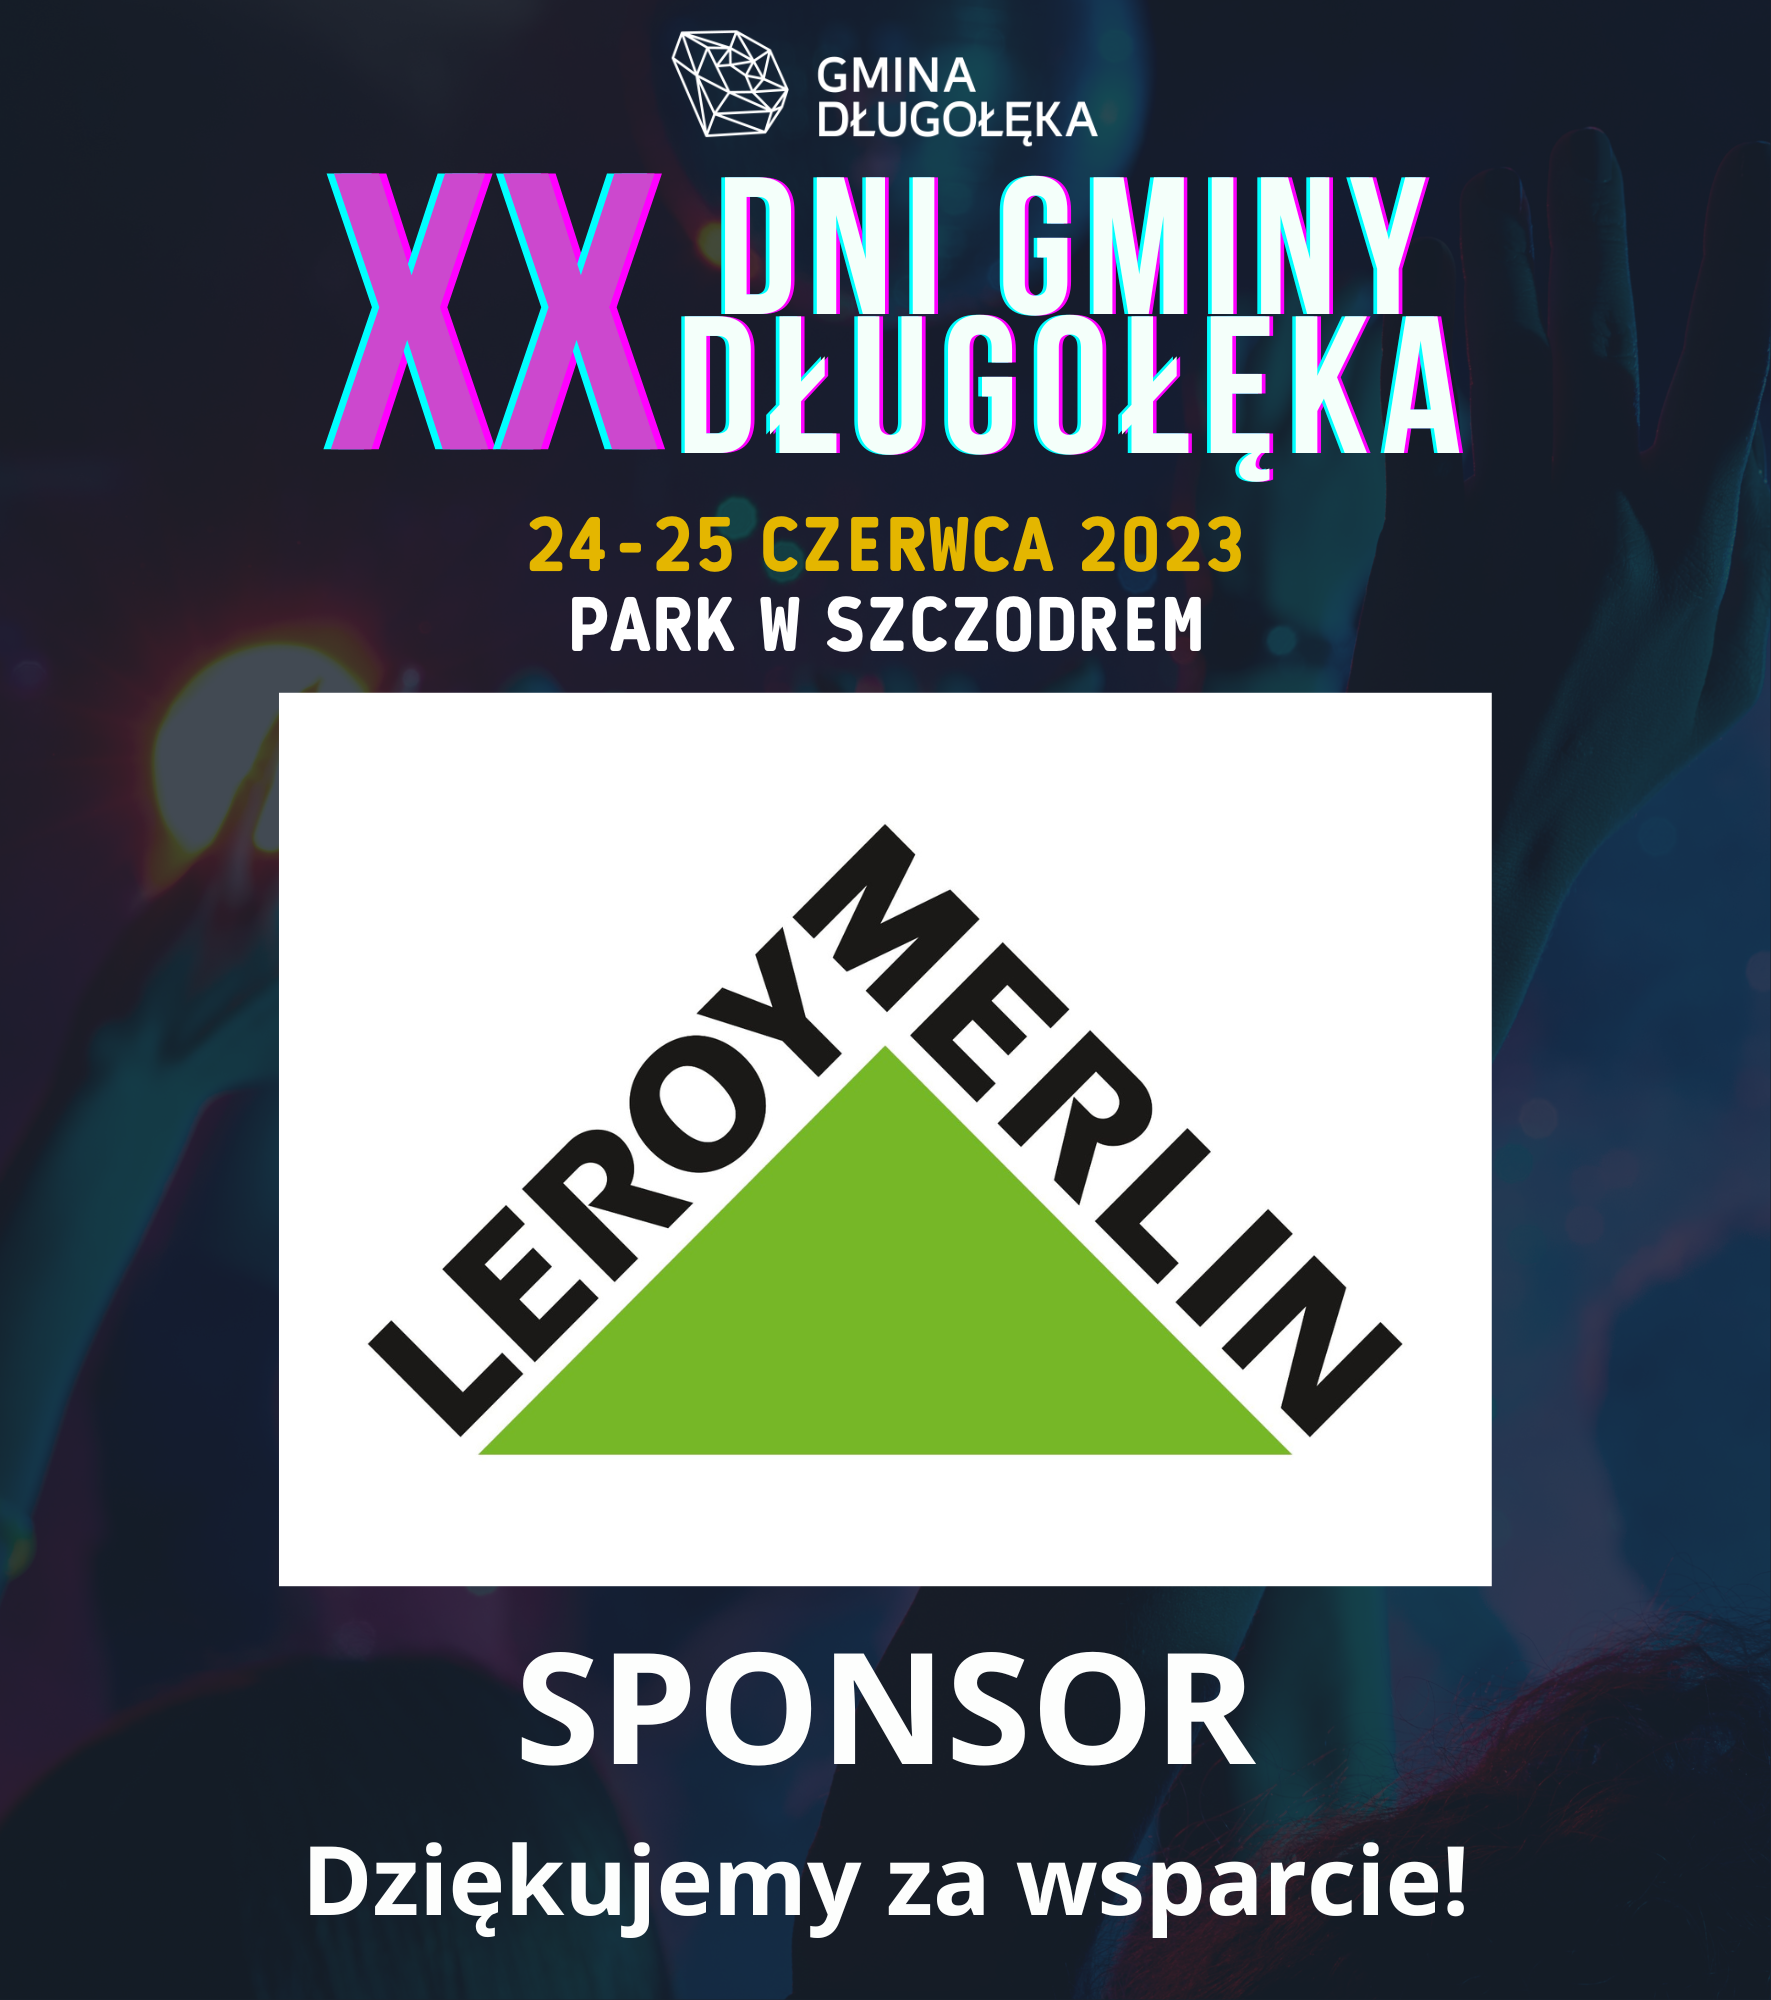 Leroy Merlin GIGAmarket Mirków sponsorem XX Dni Gminy Długołęka